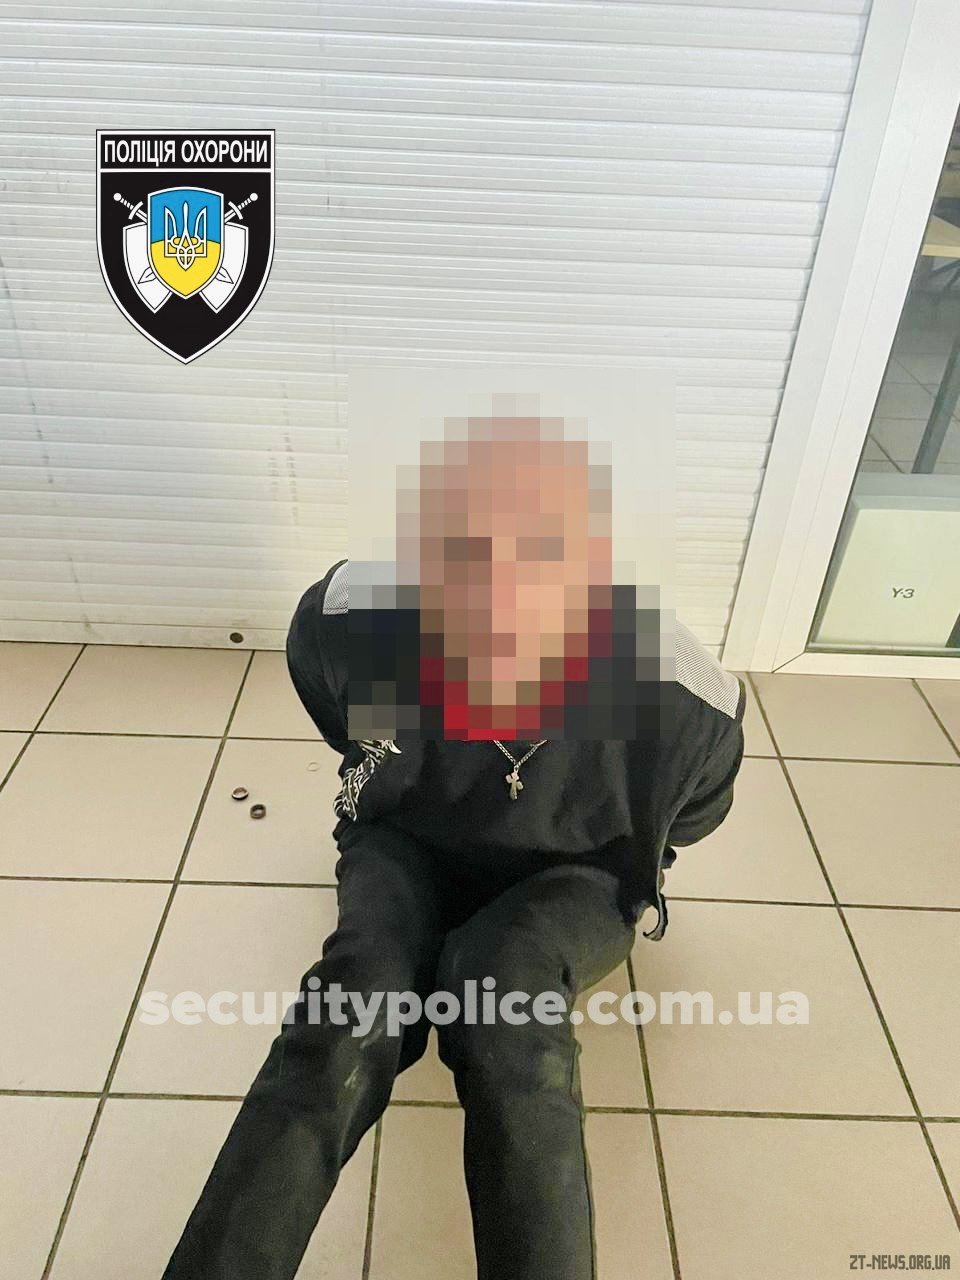 Заховався на ніч у крамниці: у Житомирі поліція охорони затримала причетного до крадіжок чоловіка